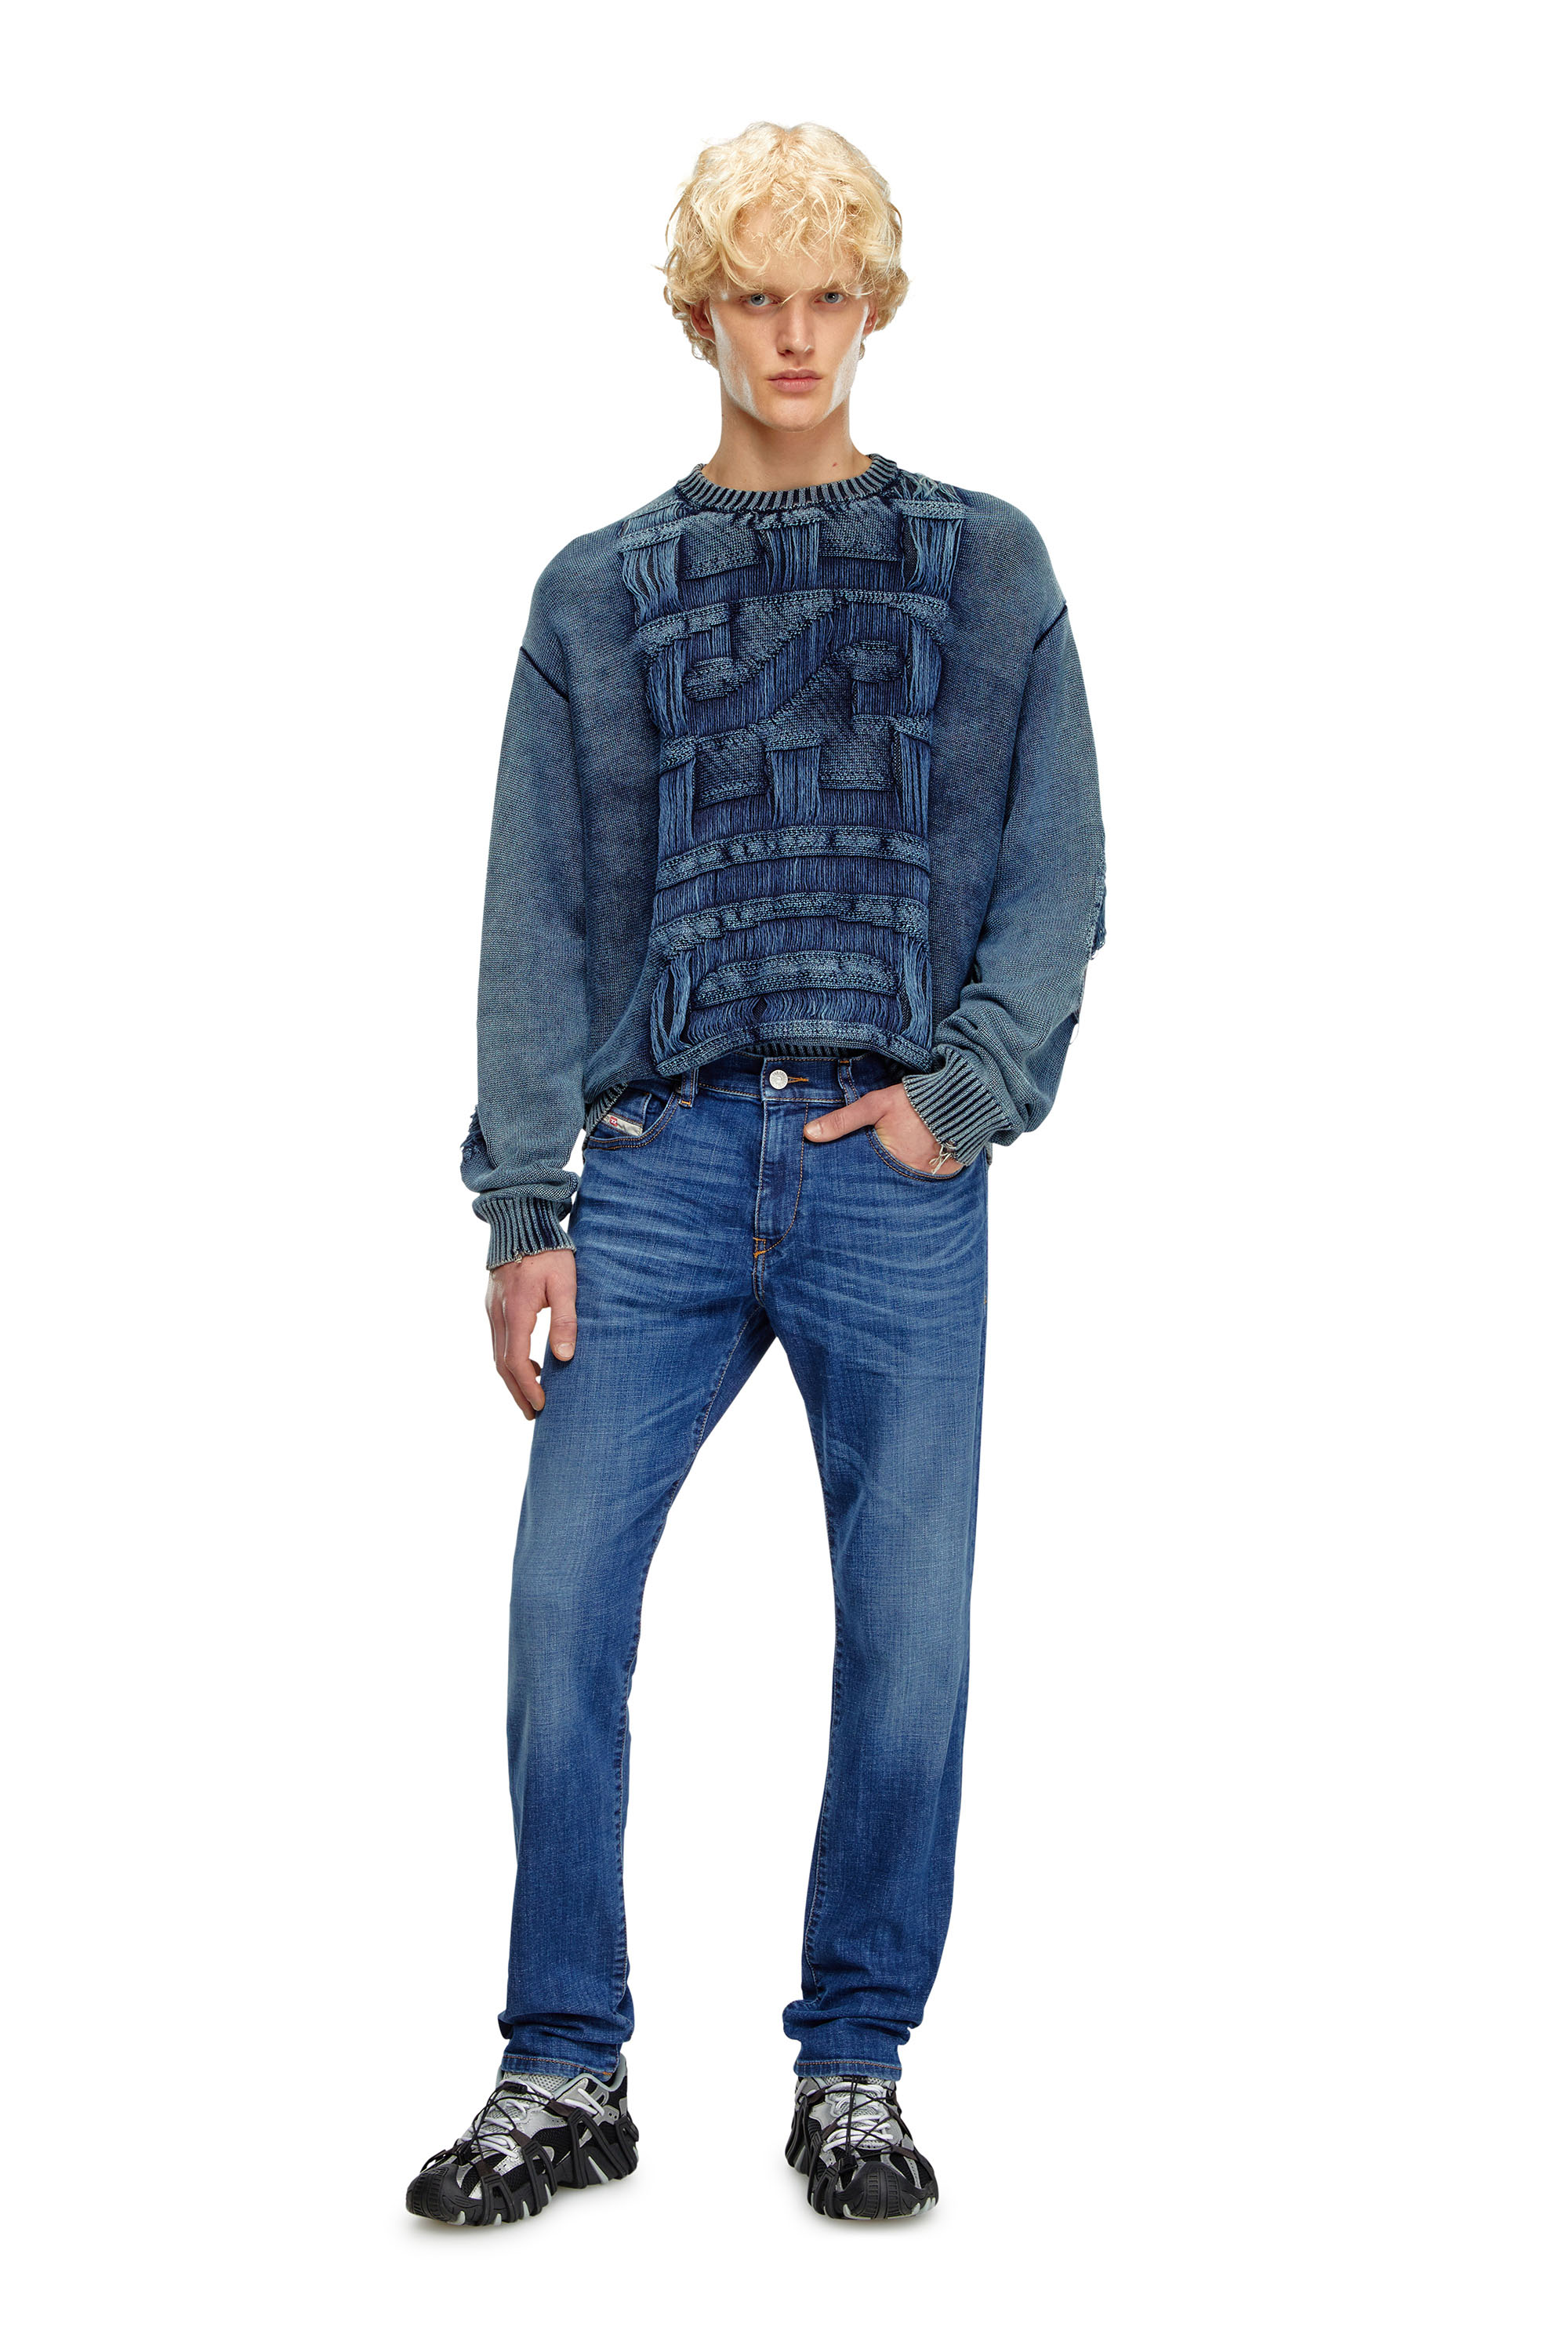 Diesel - Slim Jeans 2019 D-Strukt 09K04, Hombre Slim Jeans - 2019 D-Strukt in Azul marino - Image 1